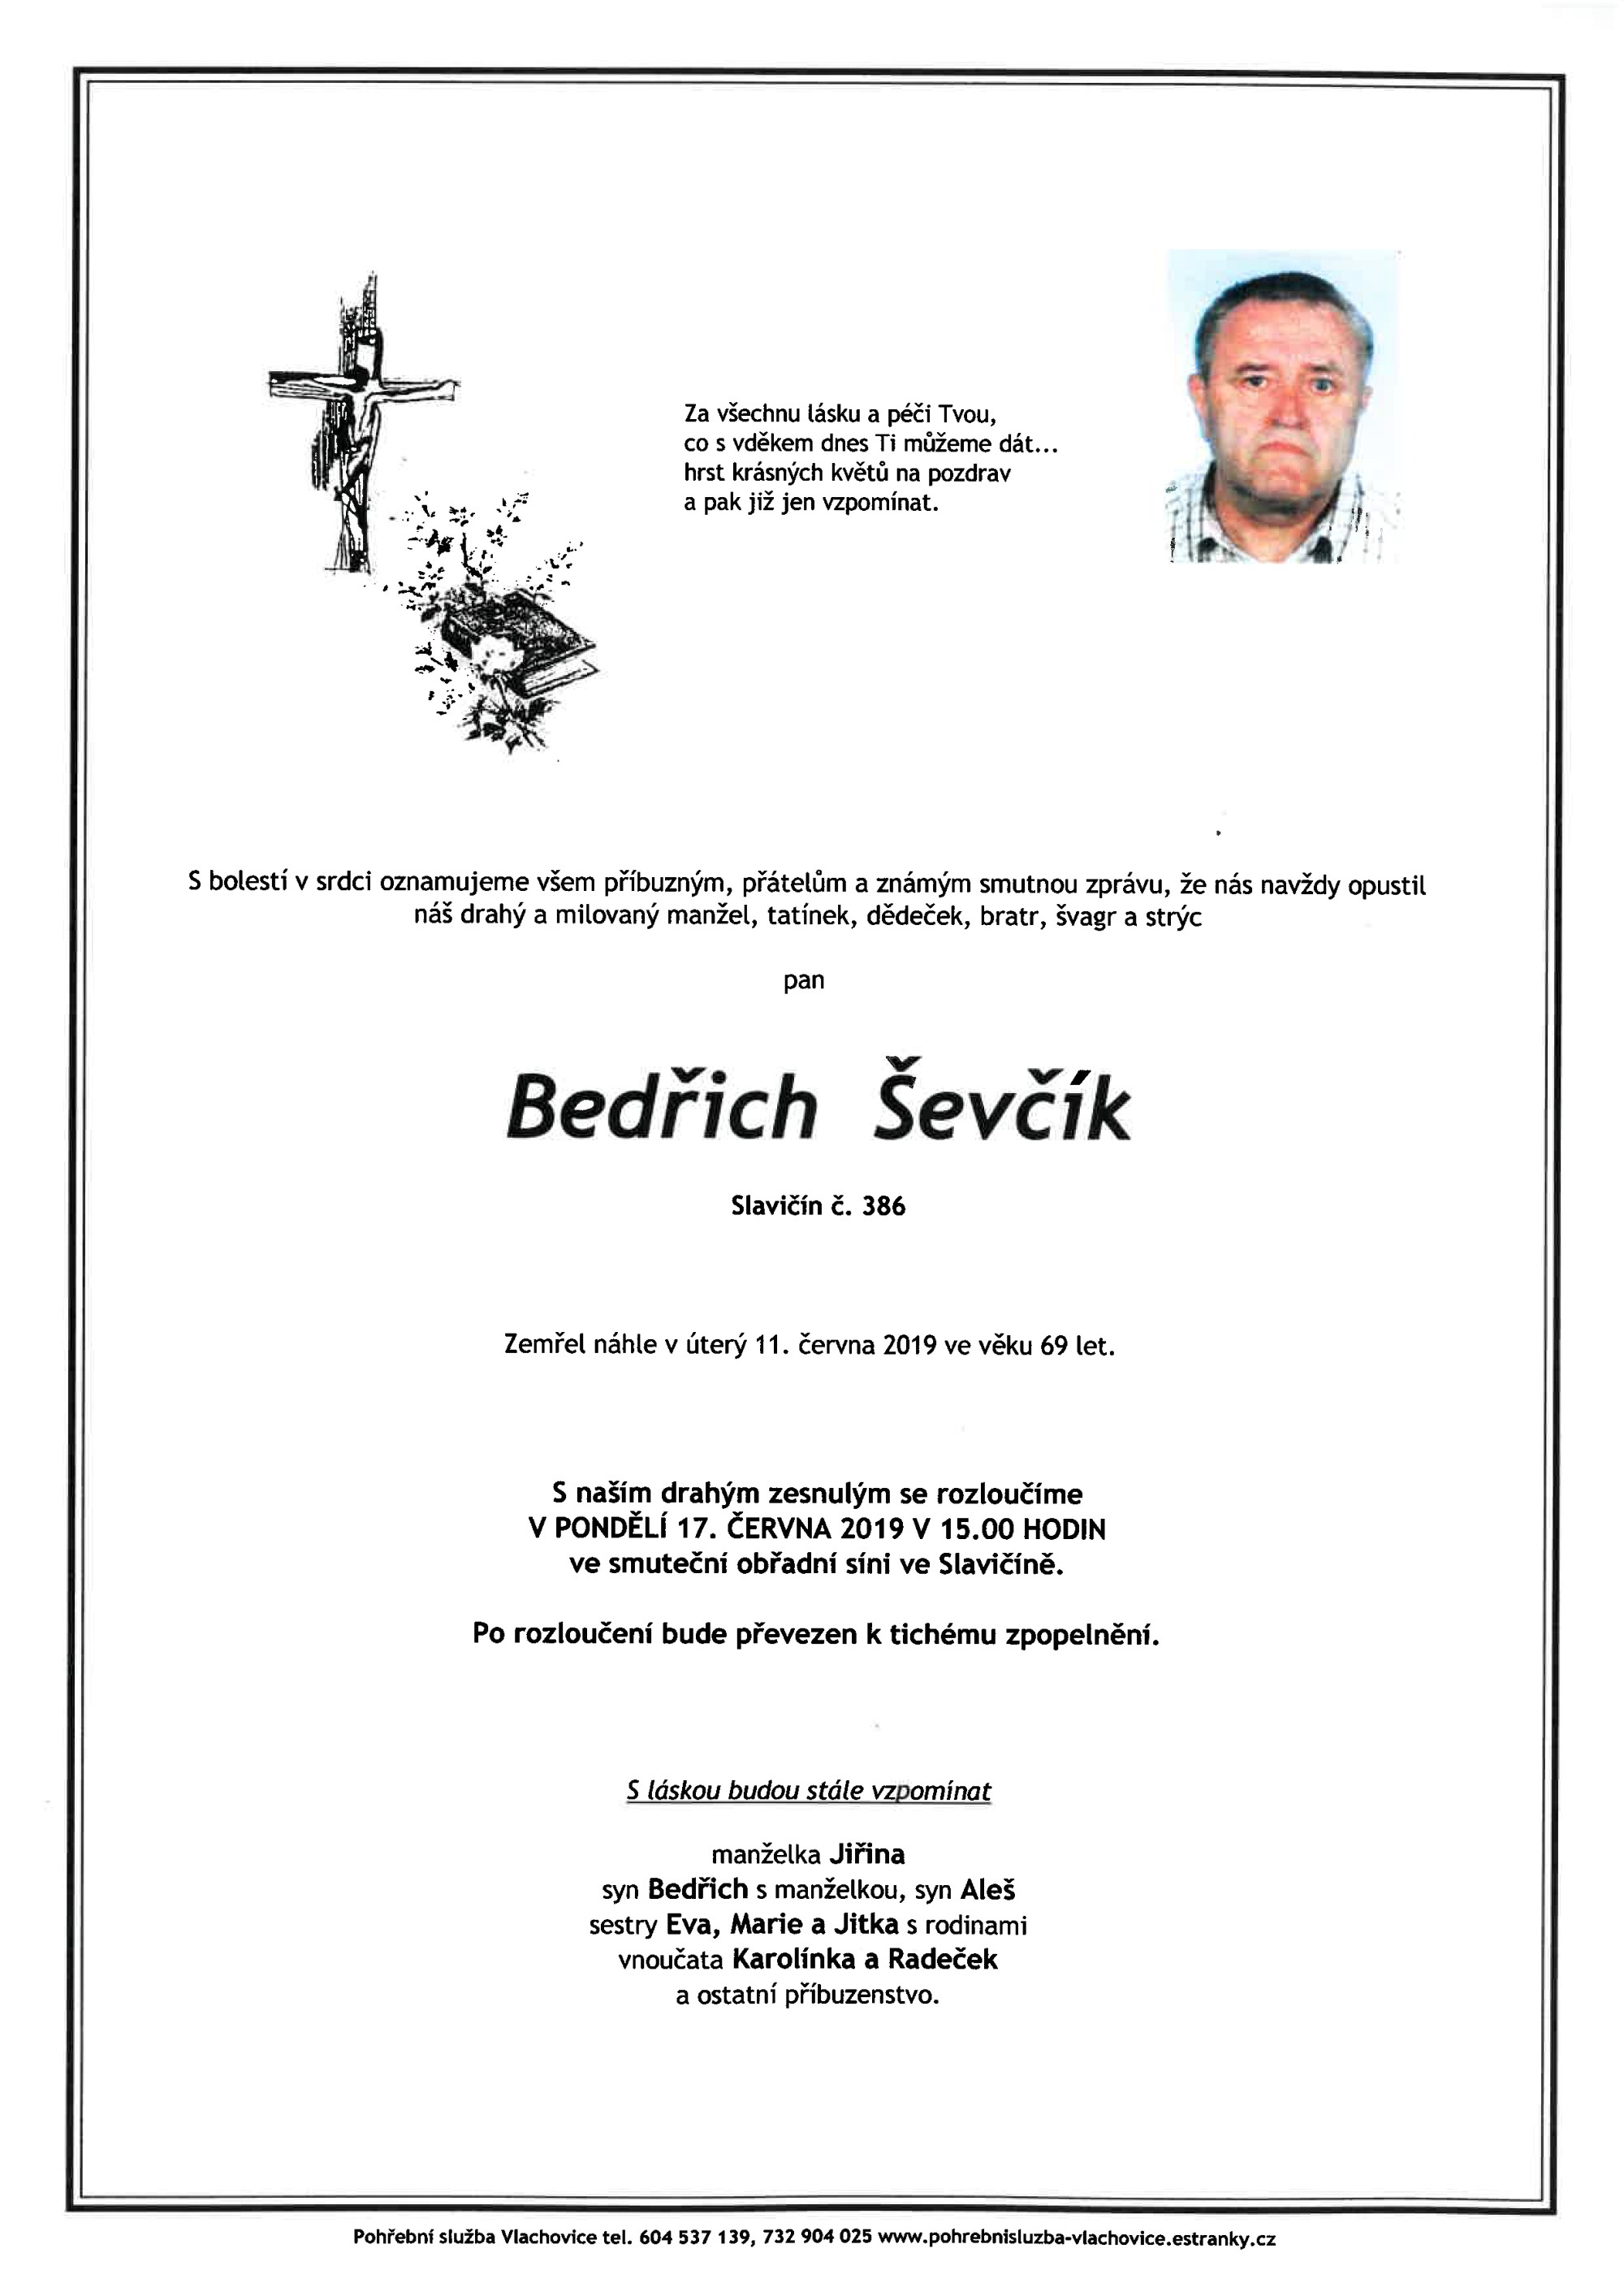 Bedřich Ševčík